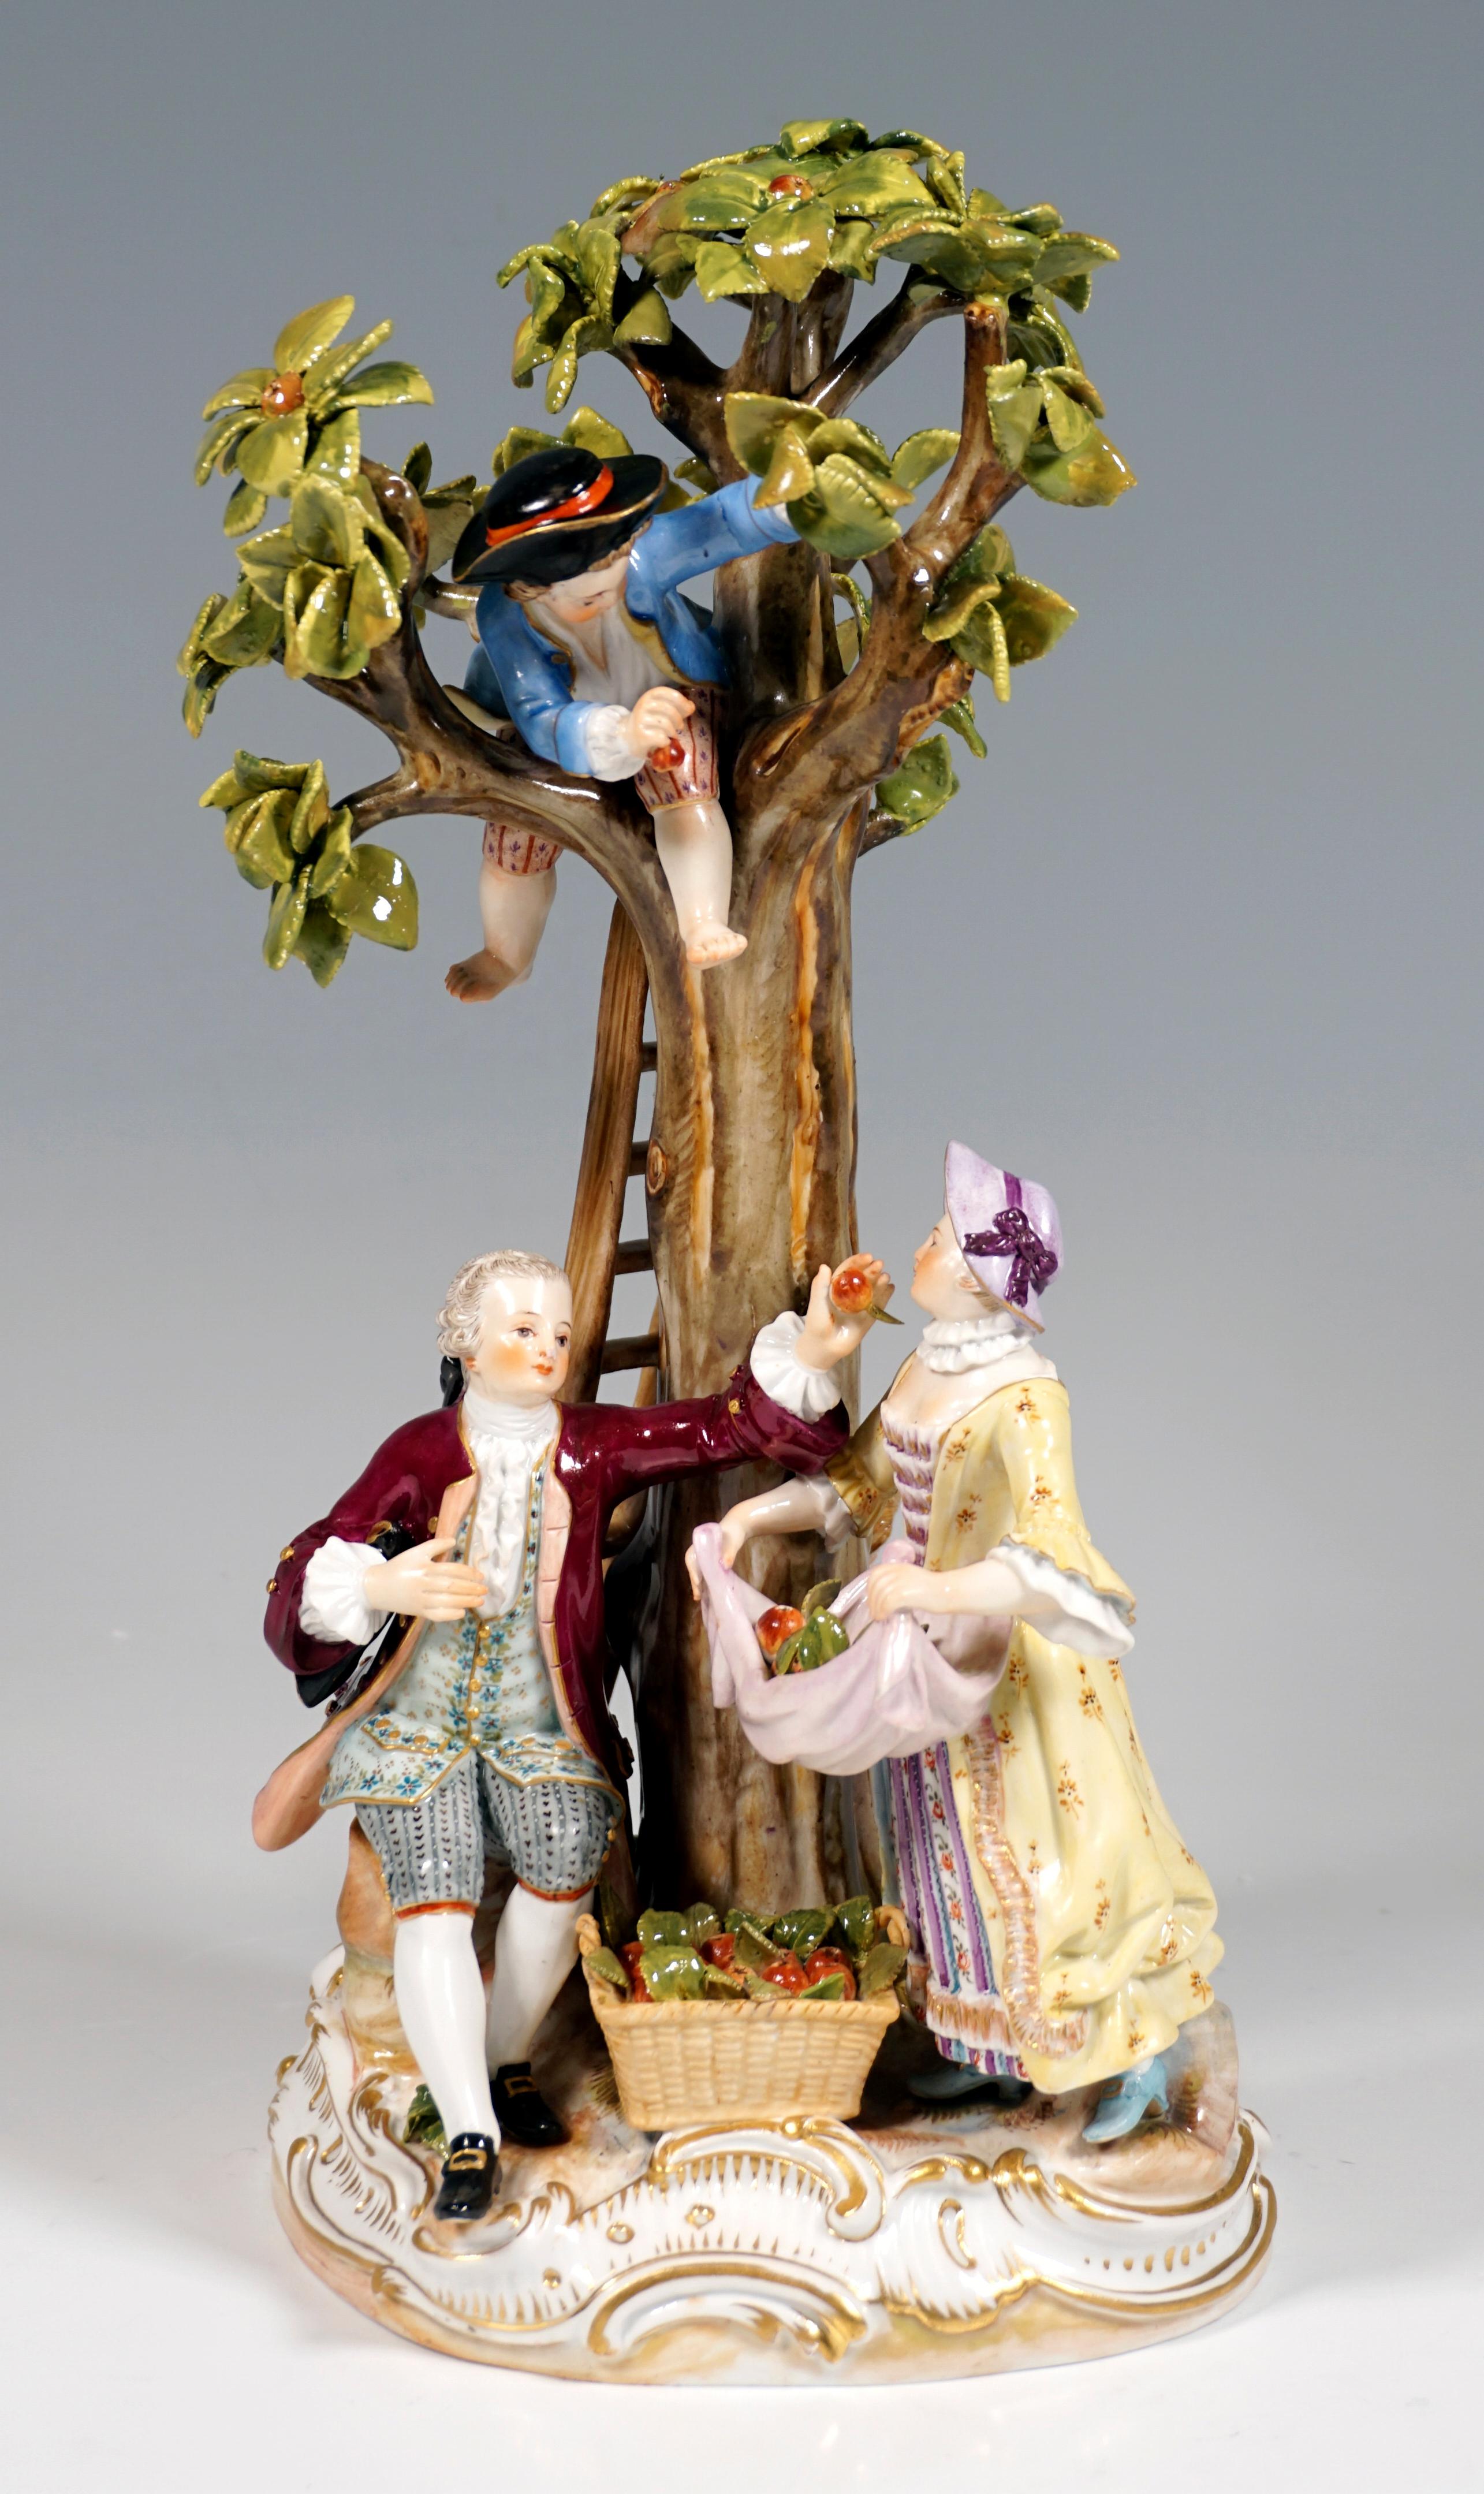 Aufwändig gearbeitete Porzellangruppe aus dem 19. Jahrhundert:
Ein Paar Gärtner und zwei Jungen bei der Ernte von Apfeln, gekleidet in ländliche Rokoko-Gewänder mit feinen Verzierungen, ein Junge, der am oberen Ende der Leiter an den Baum lehnt und